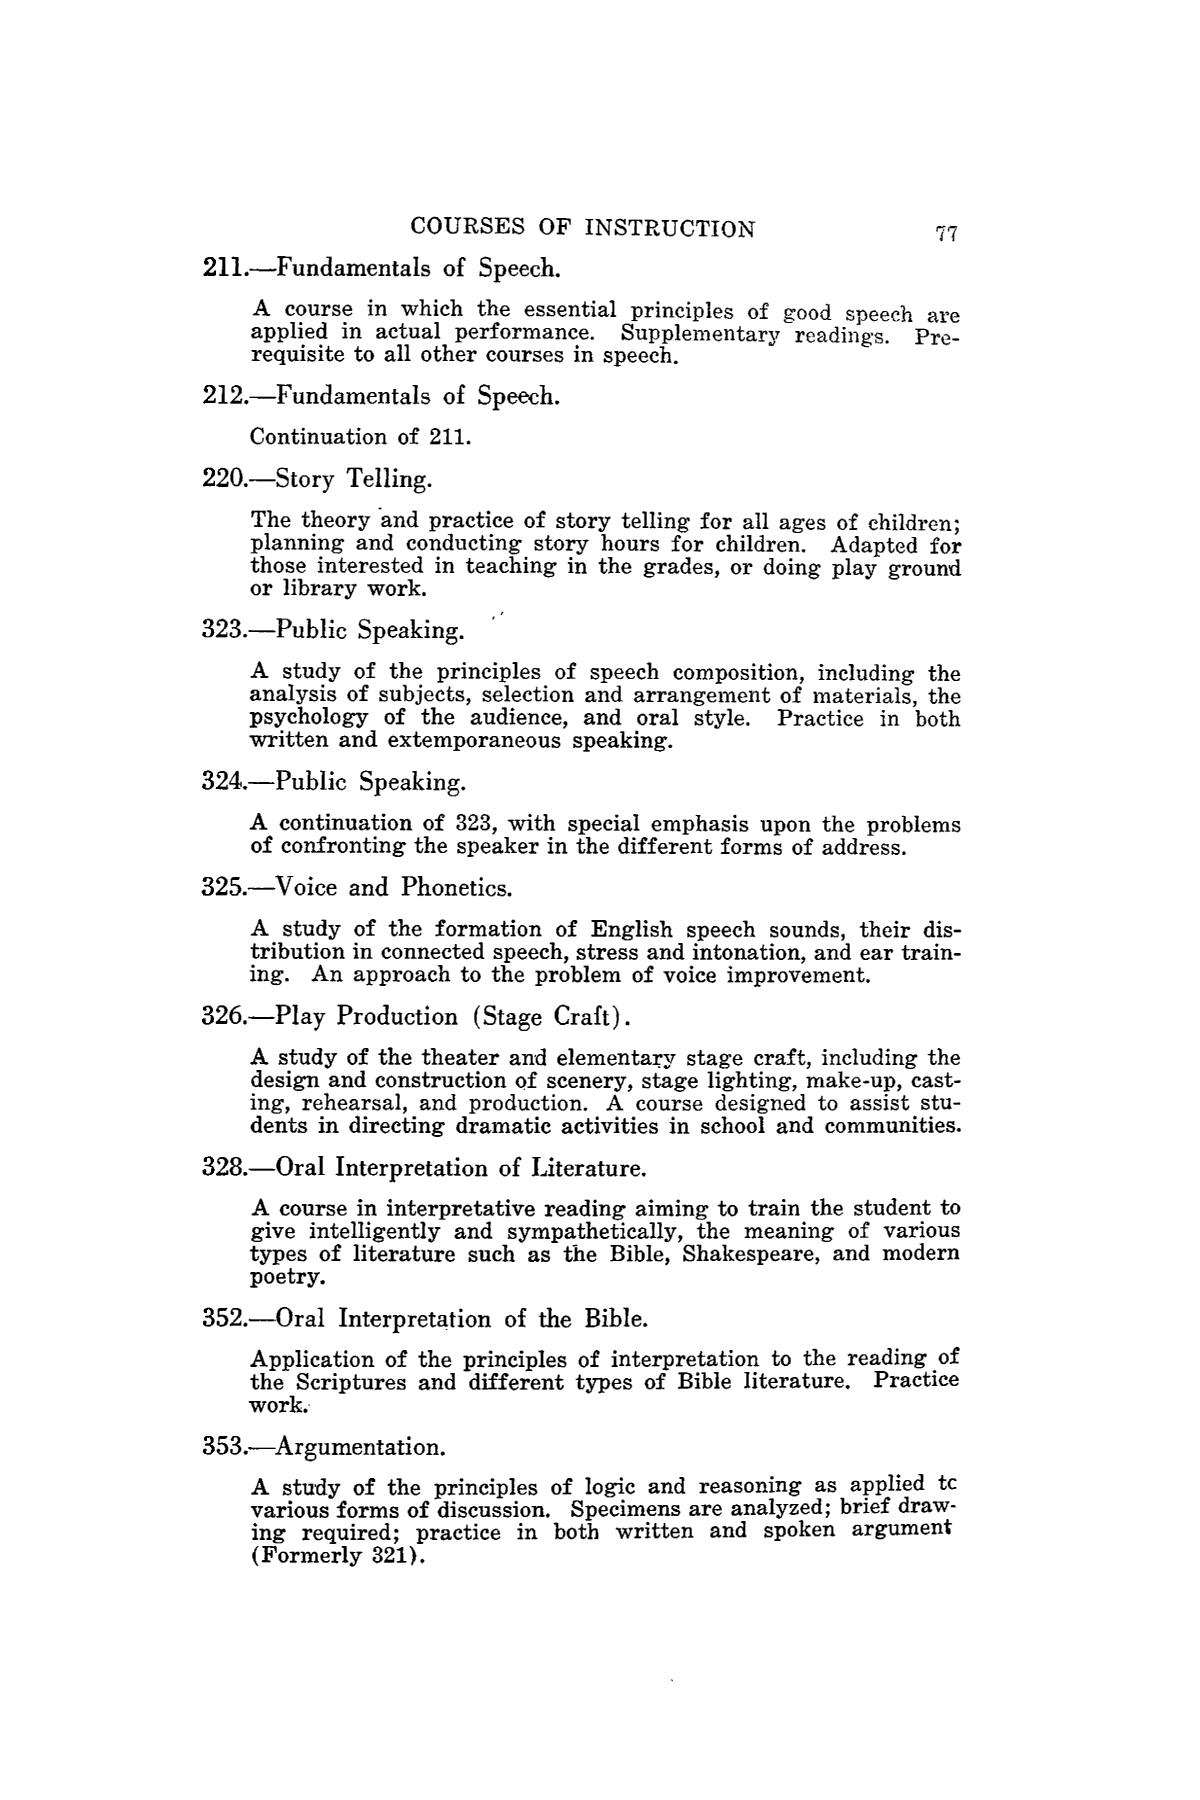 Catalog of Abilene Christian College, 1941-1942
                                                
                                                    77
                                                